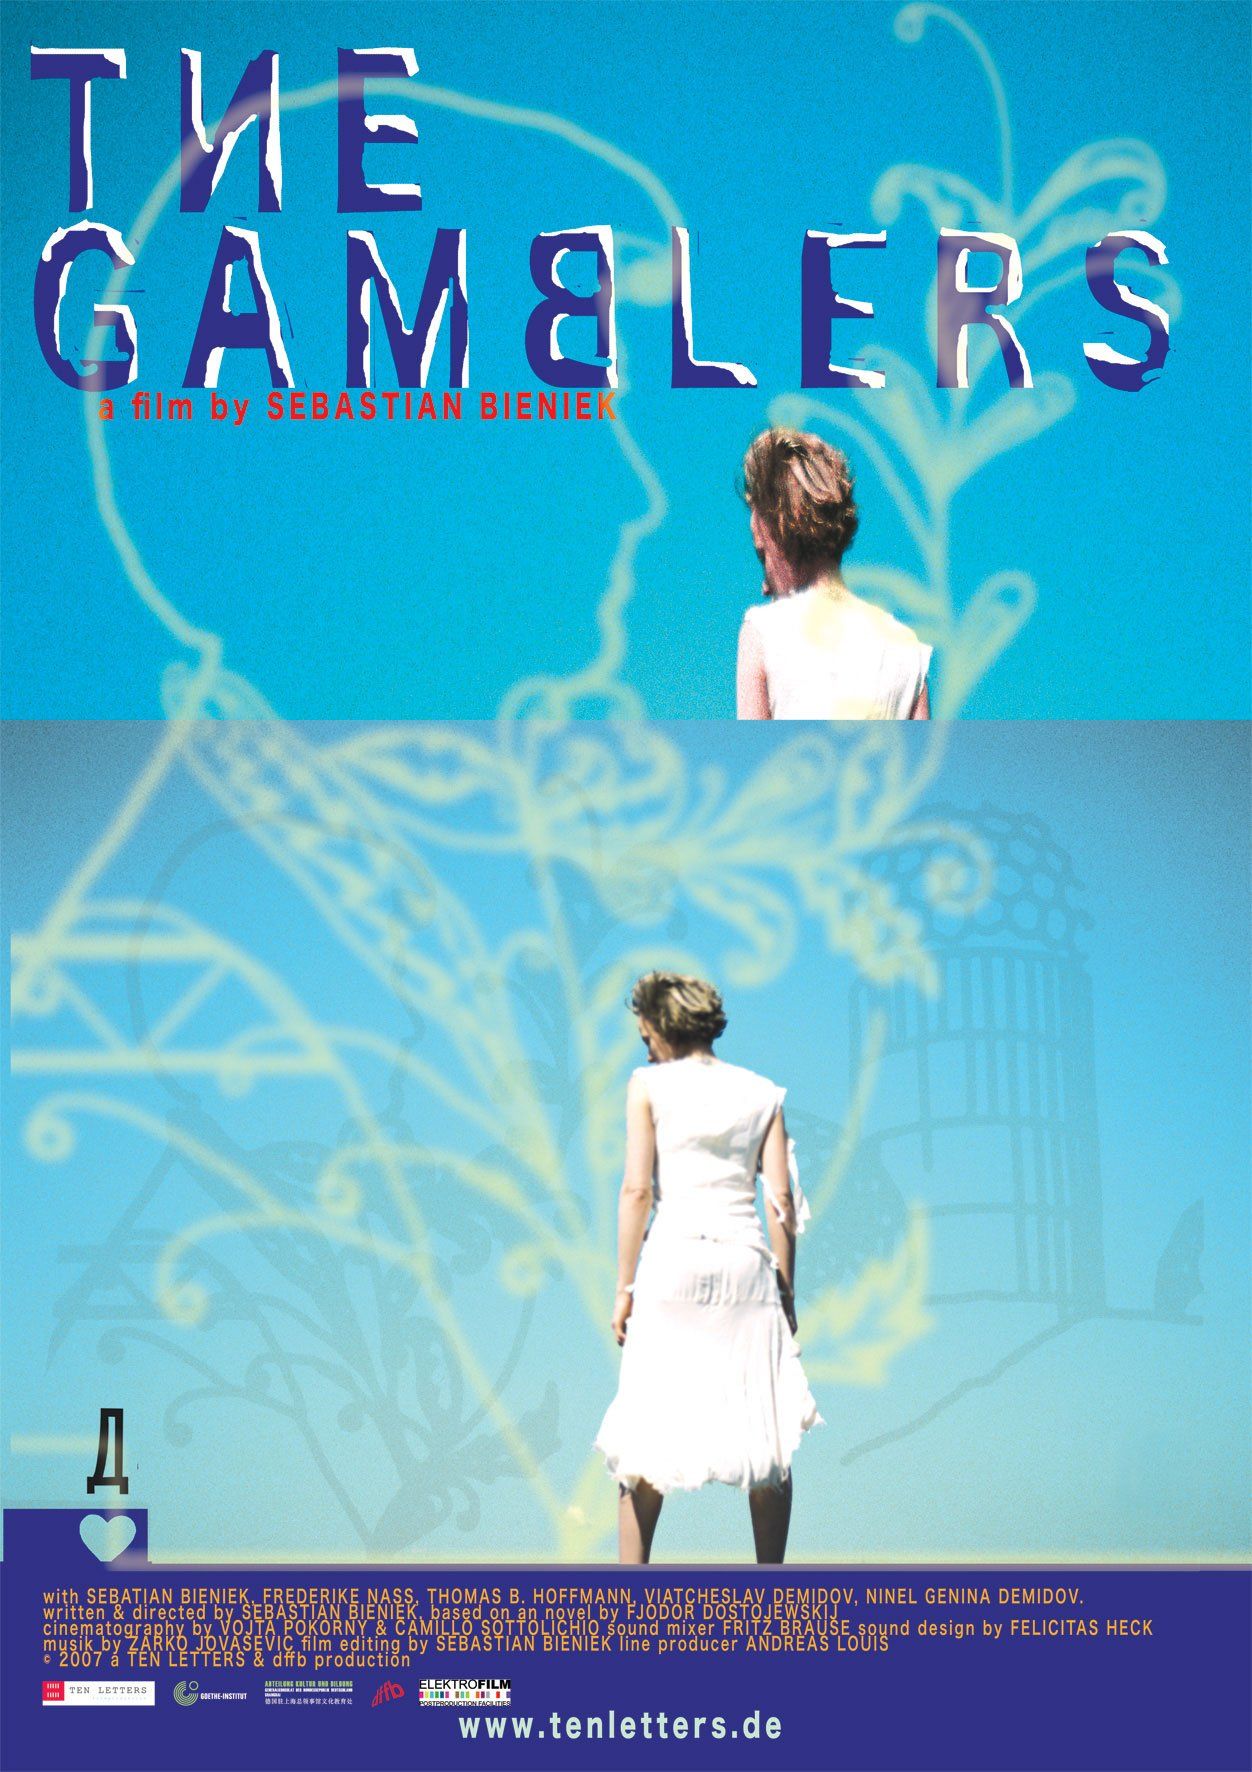 Original film poster of „The Gamblers“ by Sebastian Bieniek, 2007.